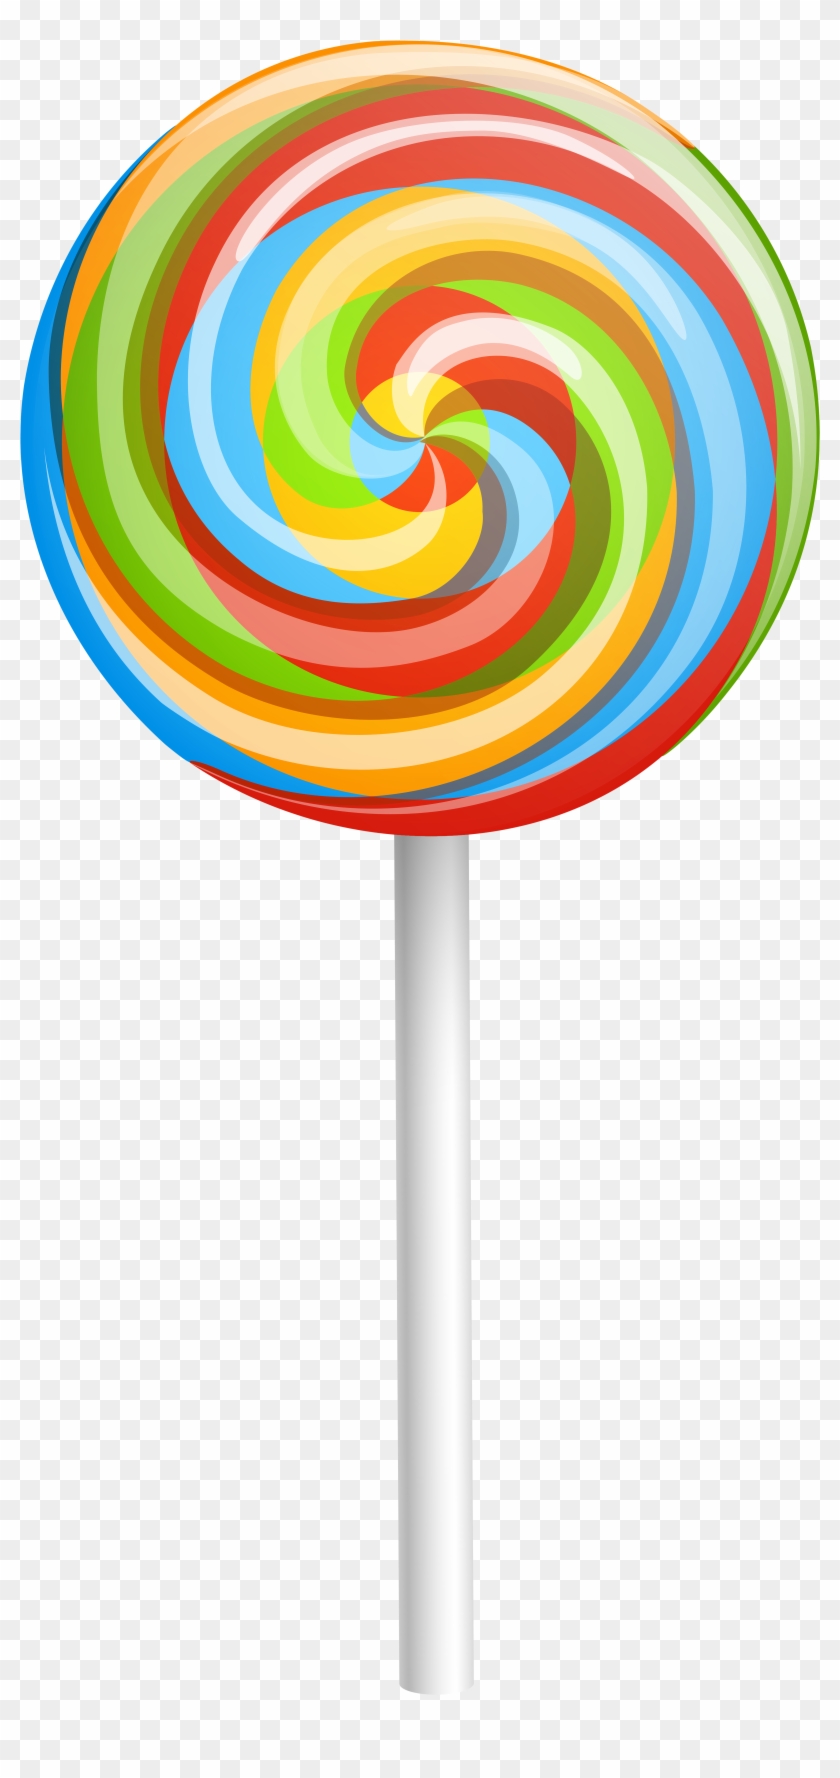 Rainbow Lollipop Png Image - Lollipop Png Clipart #50467